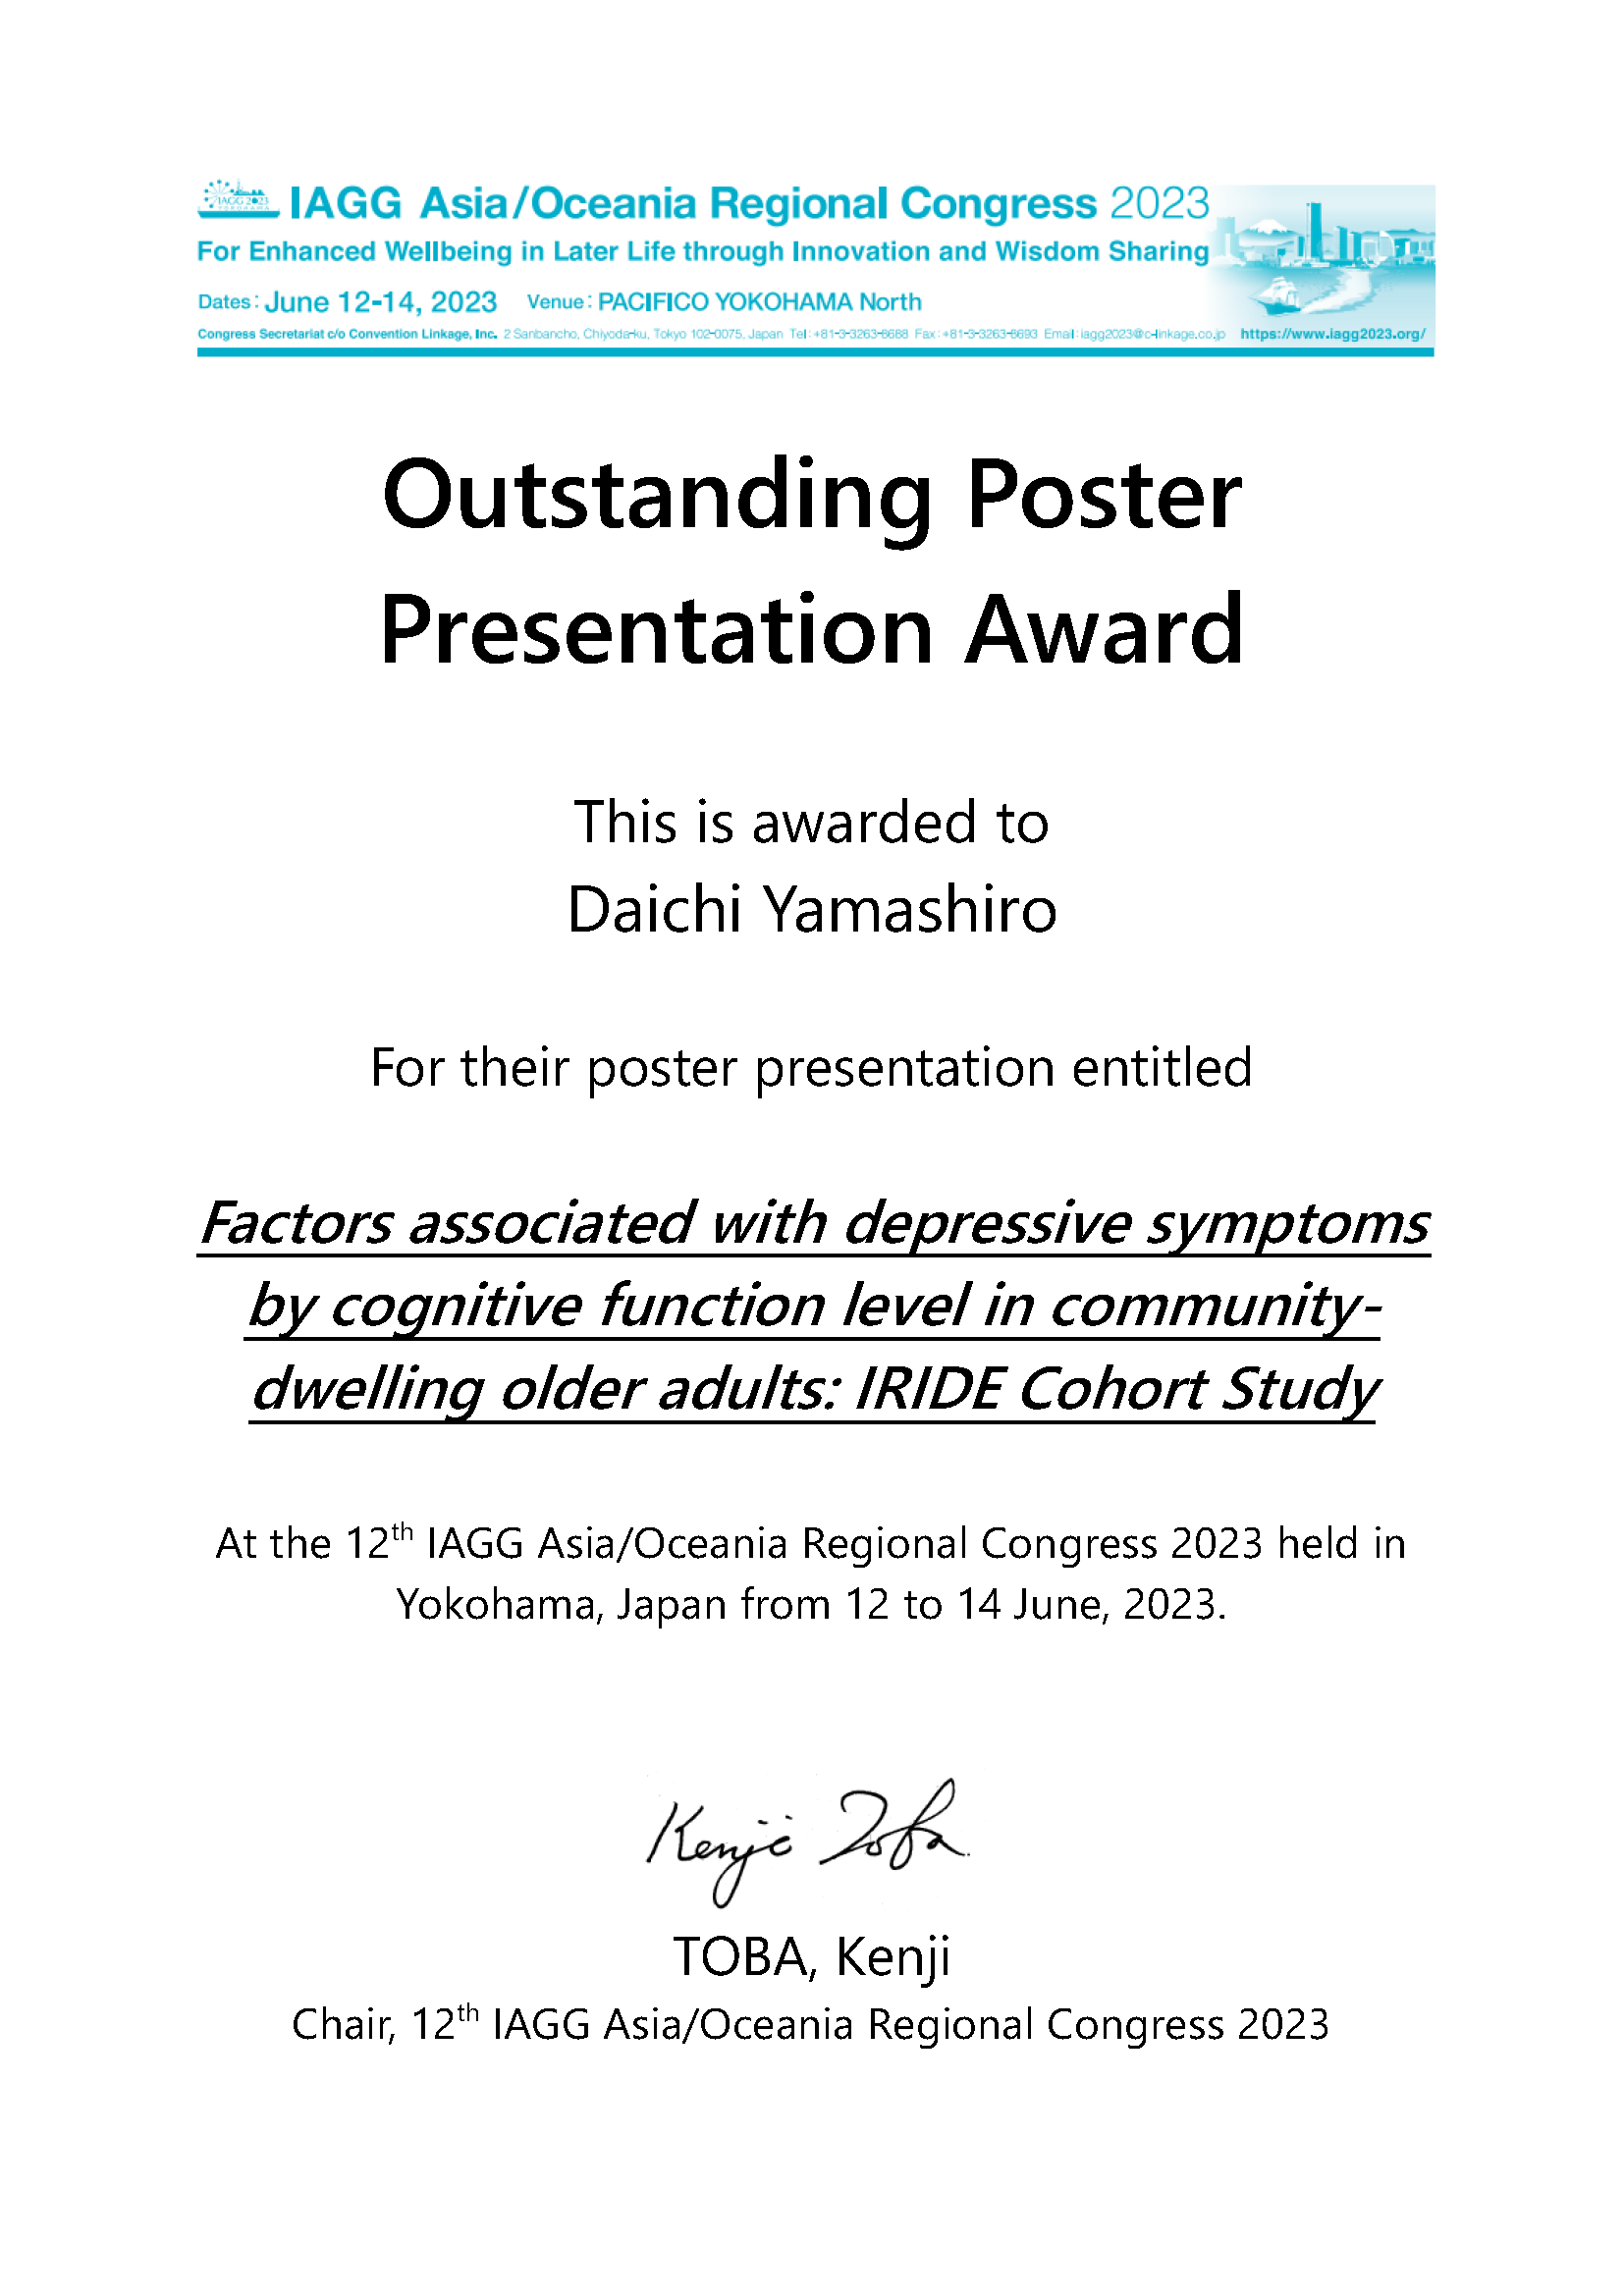 Outstanding Poster Presentation Award_1084_Daichi Yamashiro.png